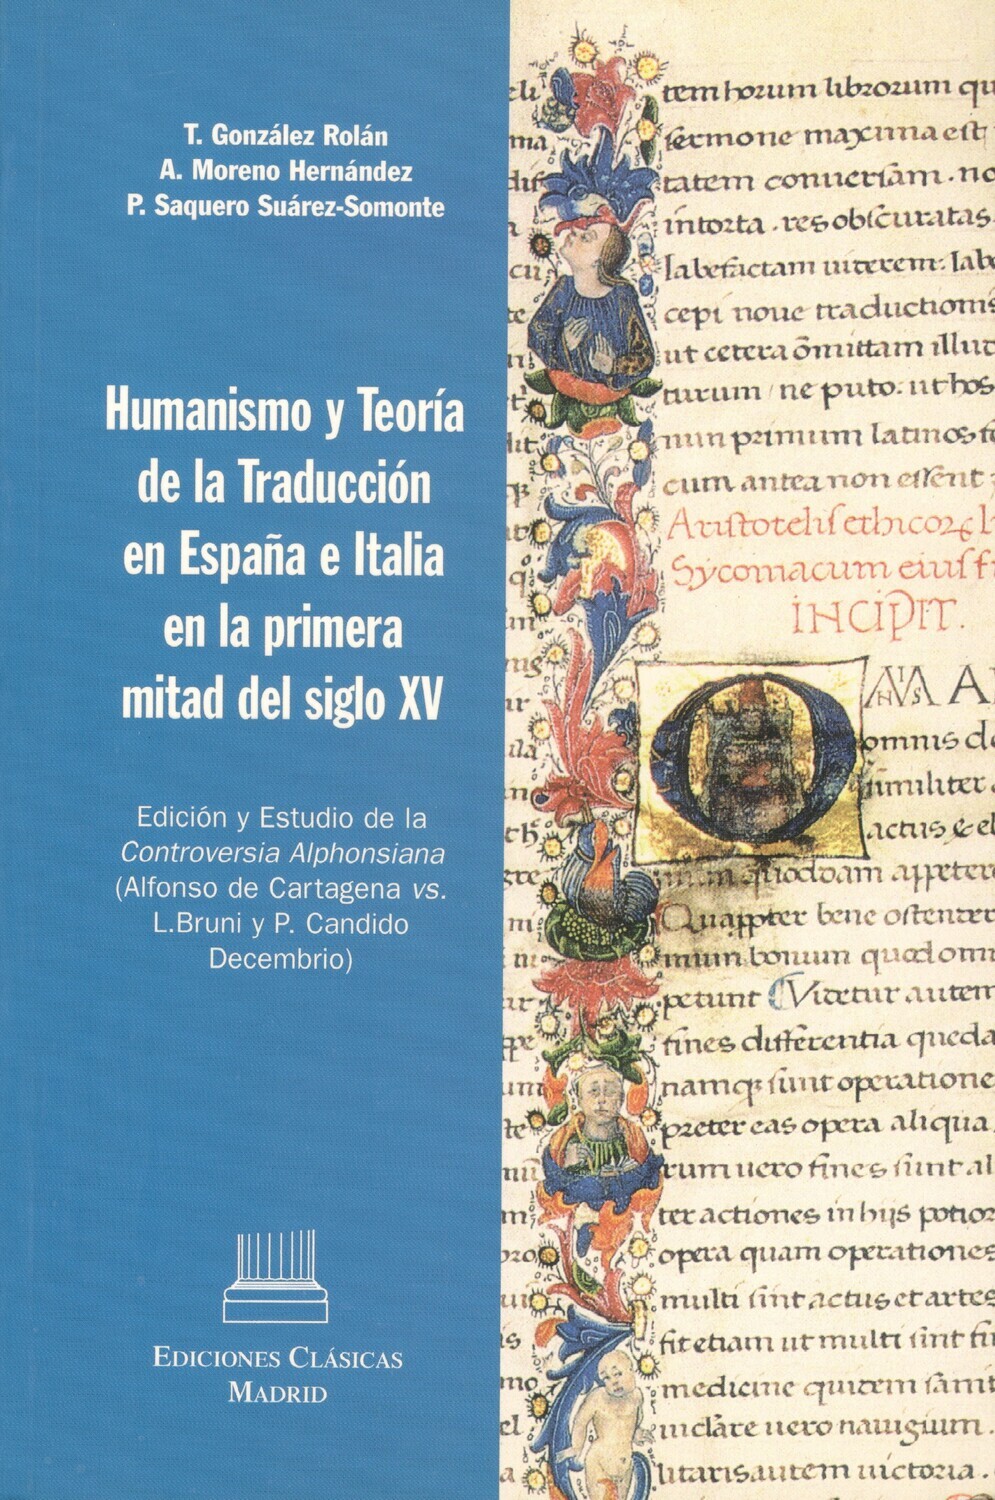 HUMANISMO Y TEORÍA DE LA TRADUCCIÓN EN ESPAÑA E ITALIA EN LA PRIMERA MITAD DEL SIGLO XV